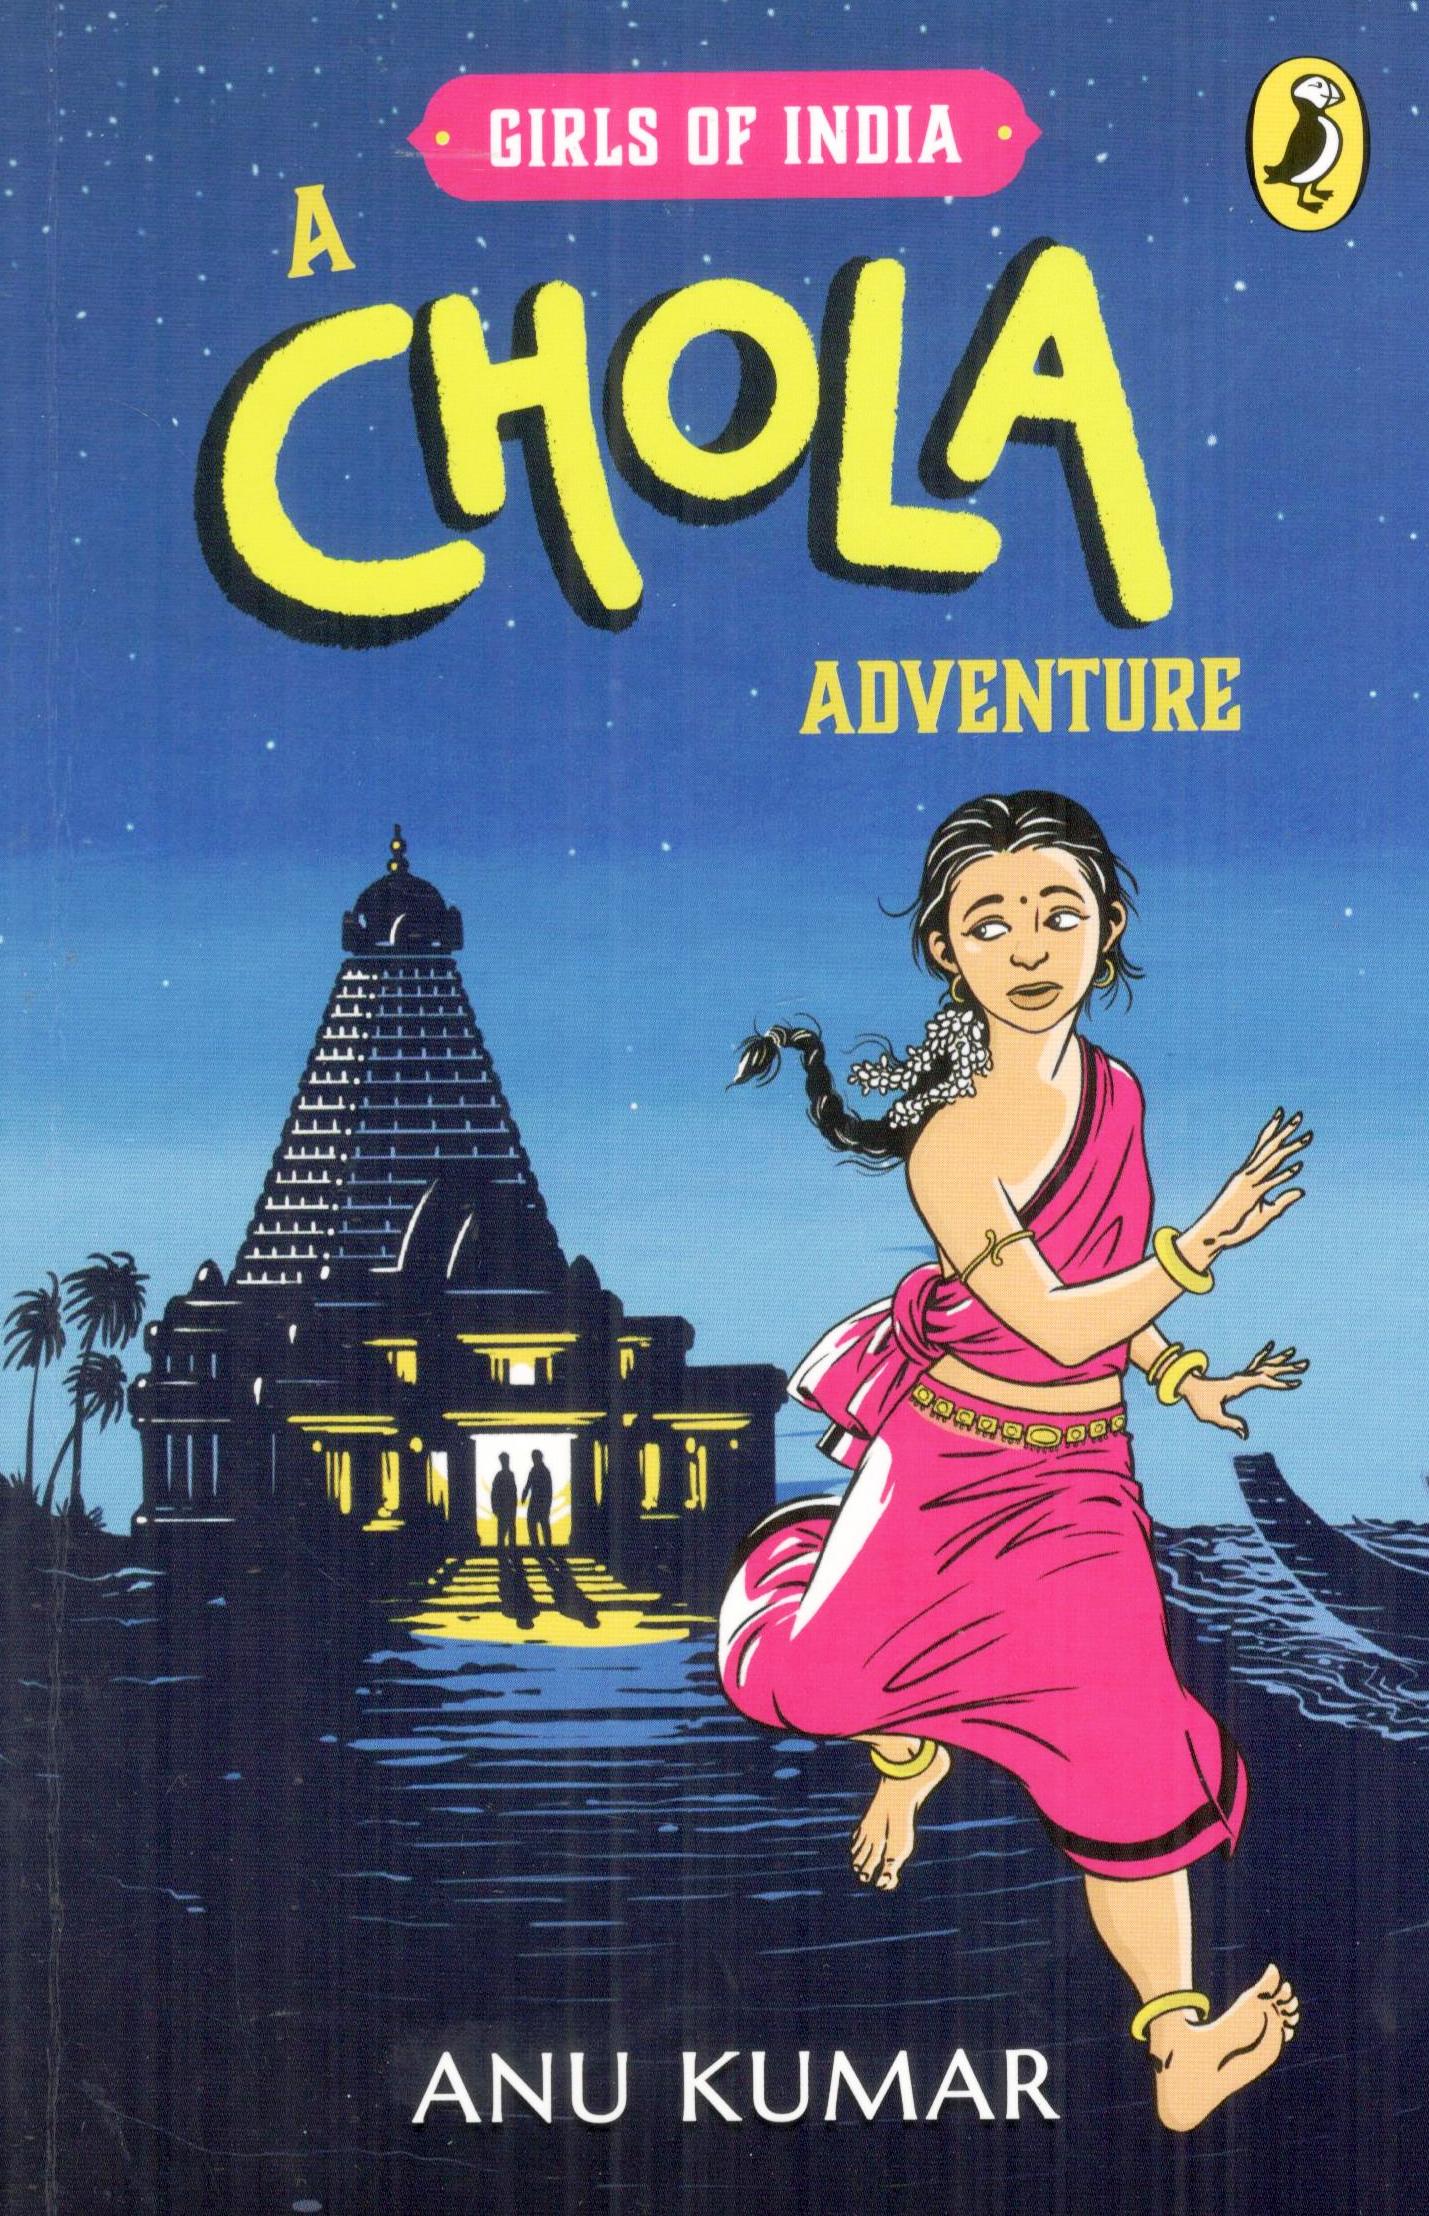 A Chola adventure